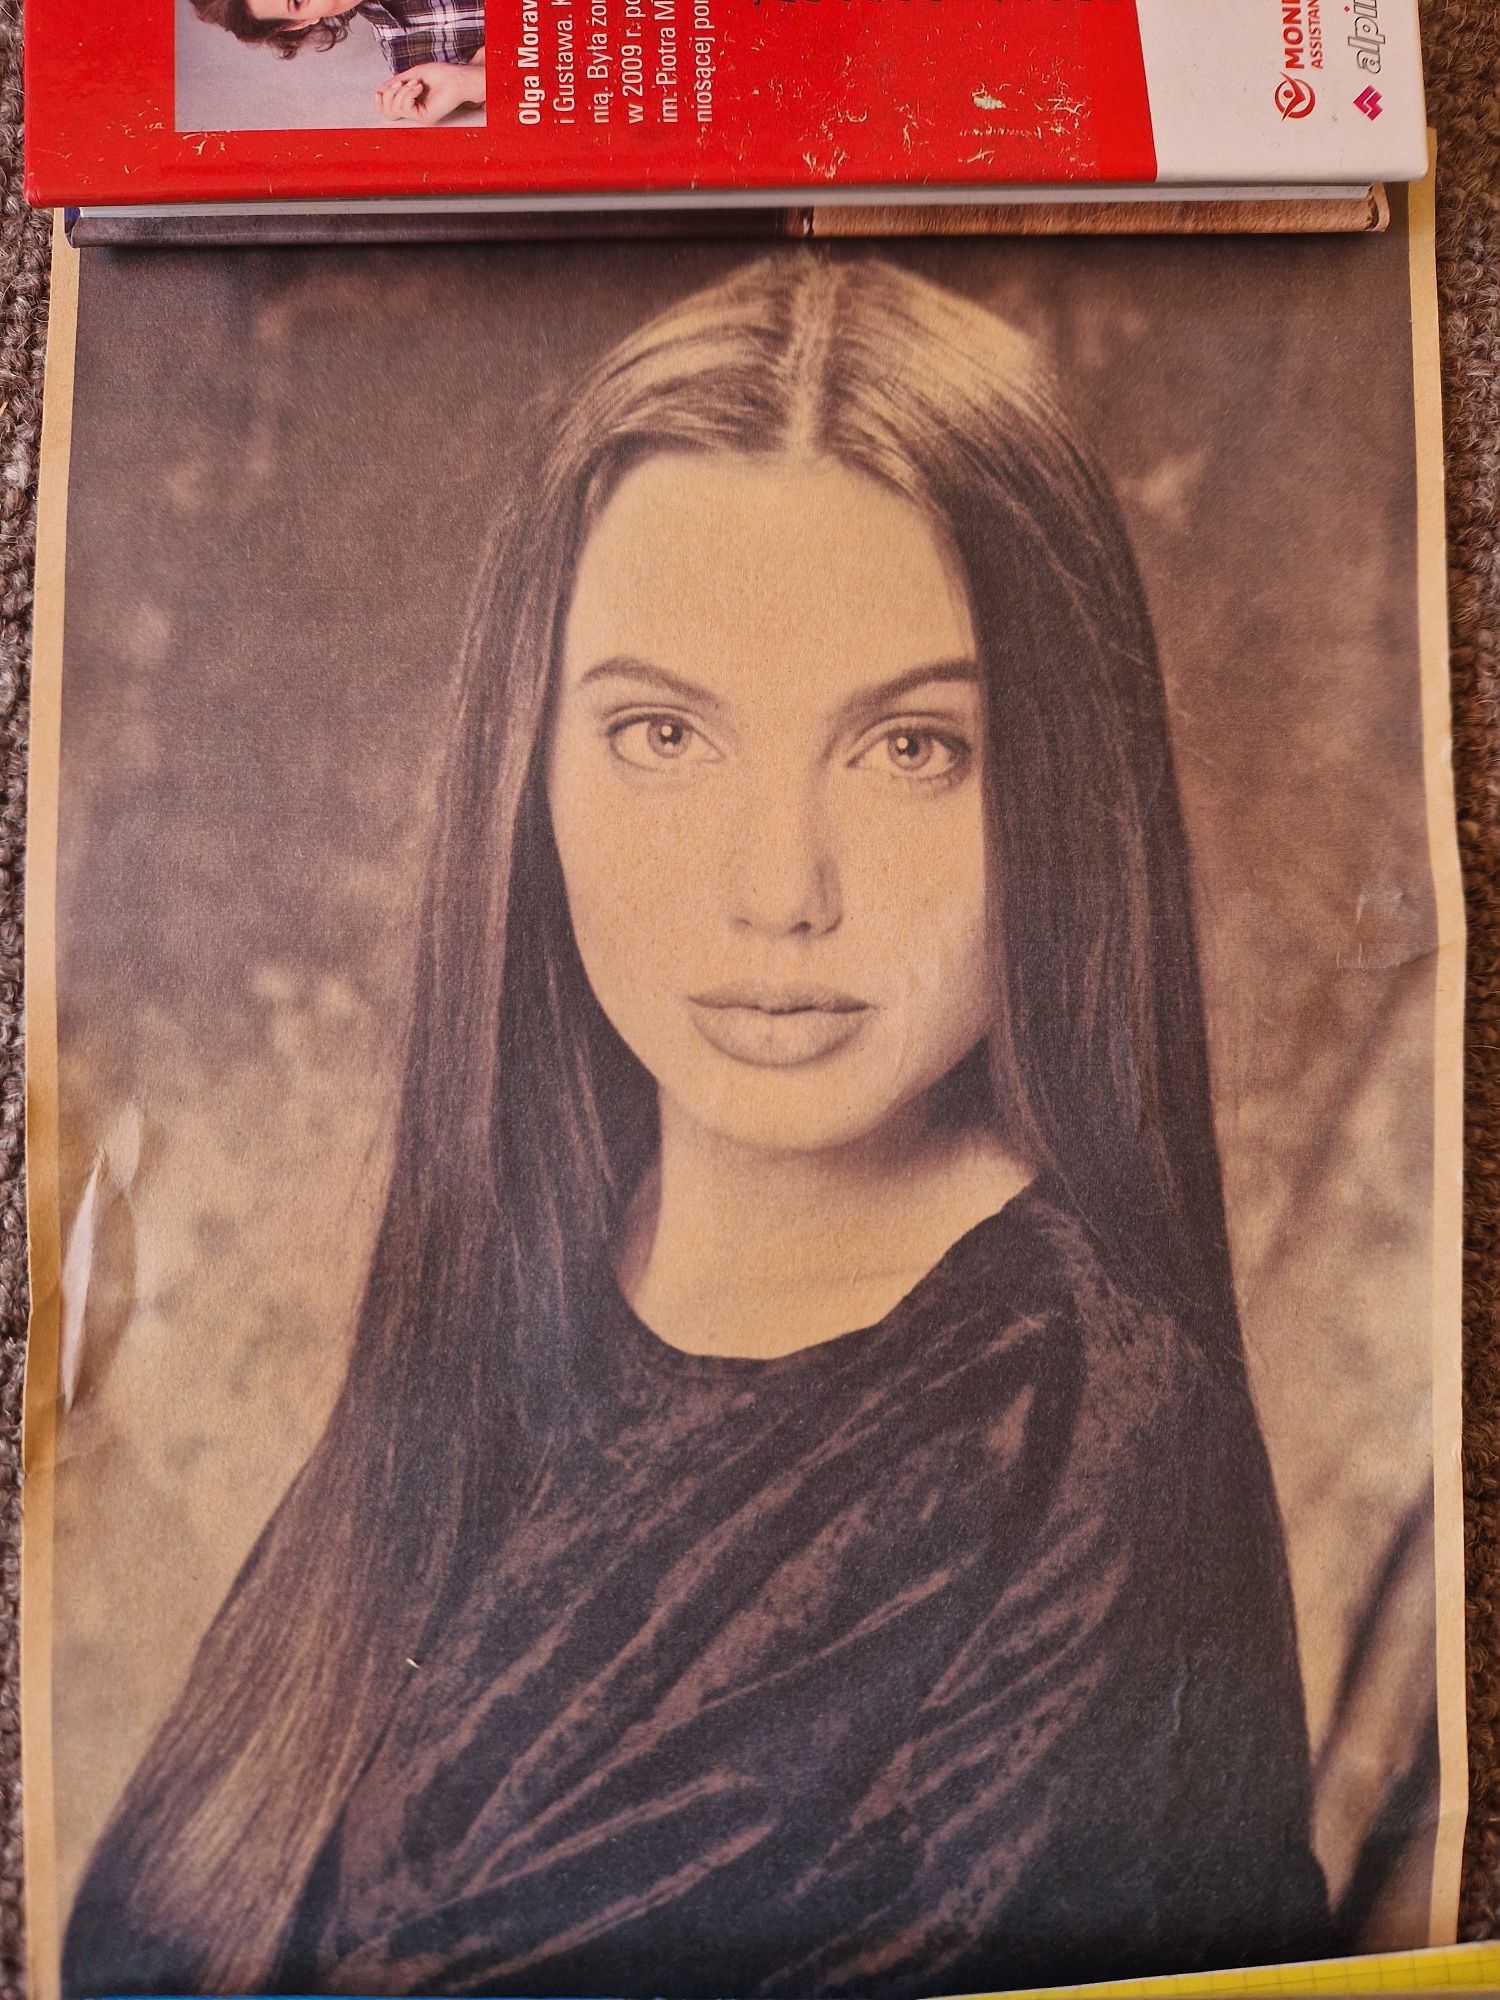 Nowy plakat Angelina Jolie przecena 60 %